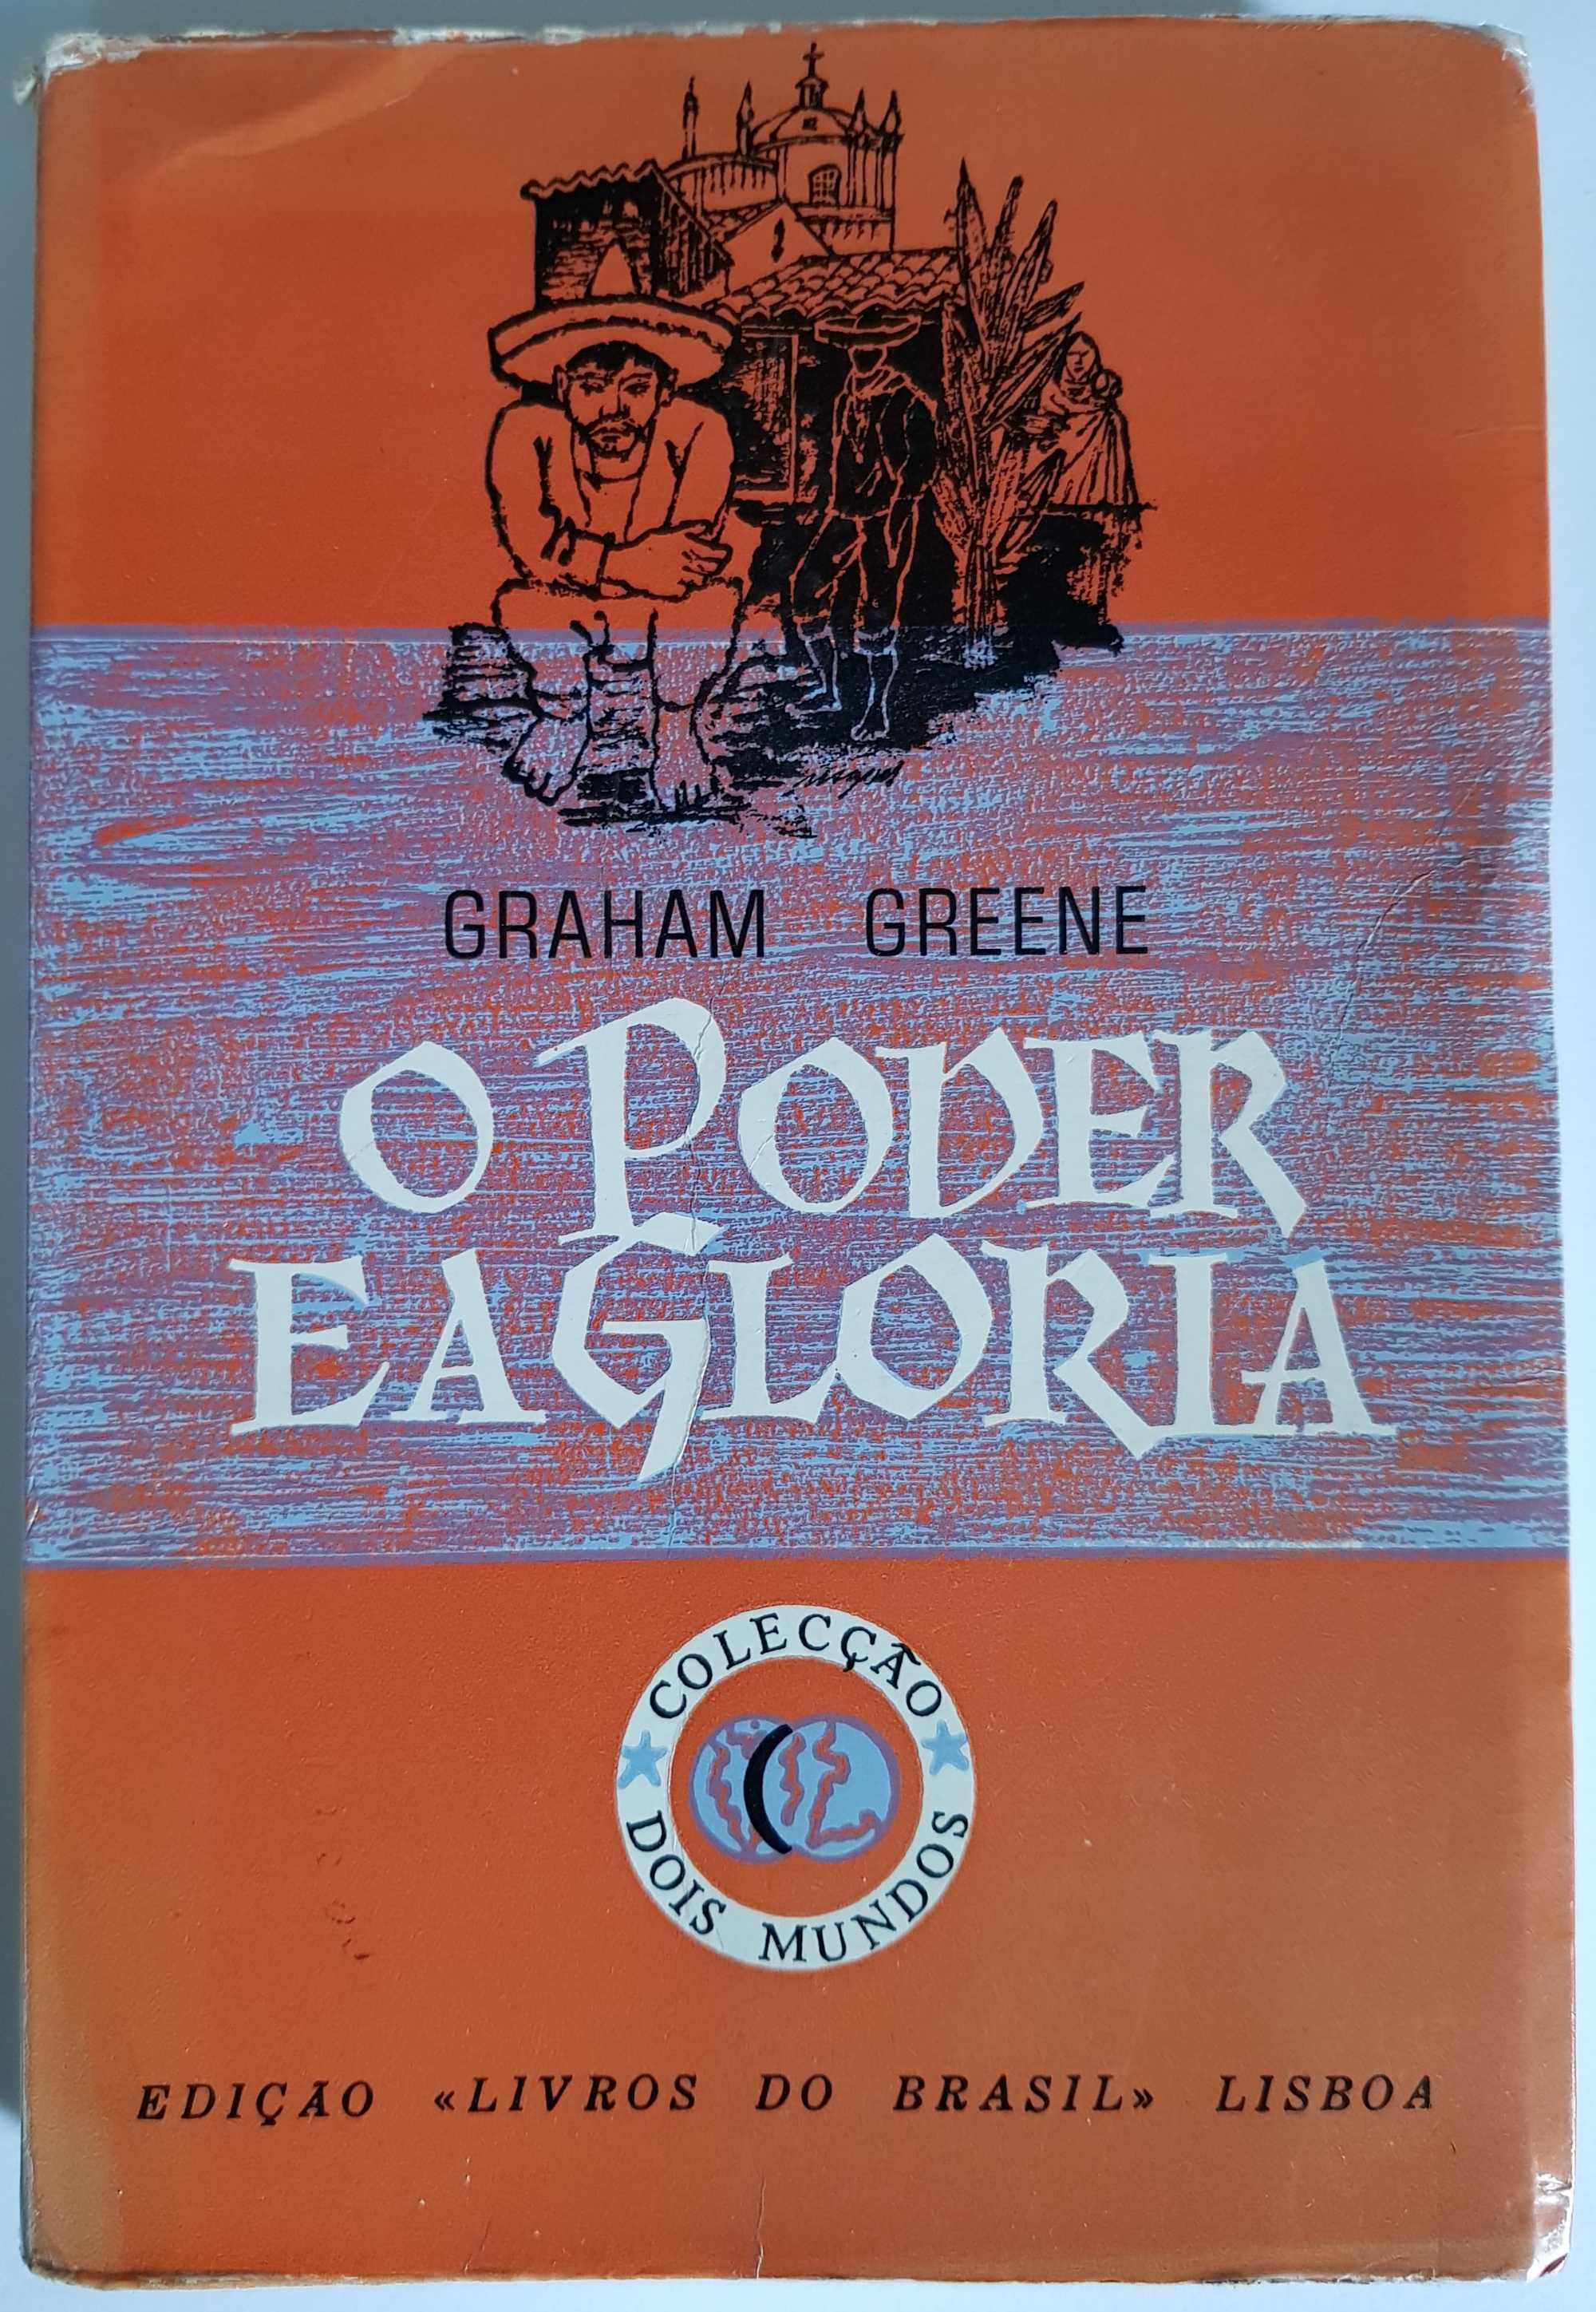 O poder e a glória - Graham Greene